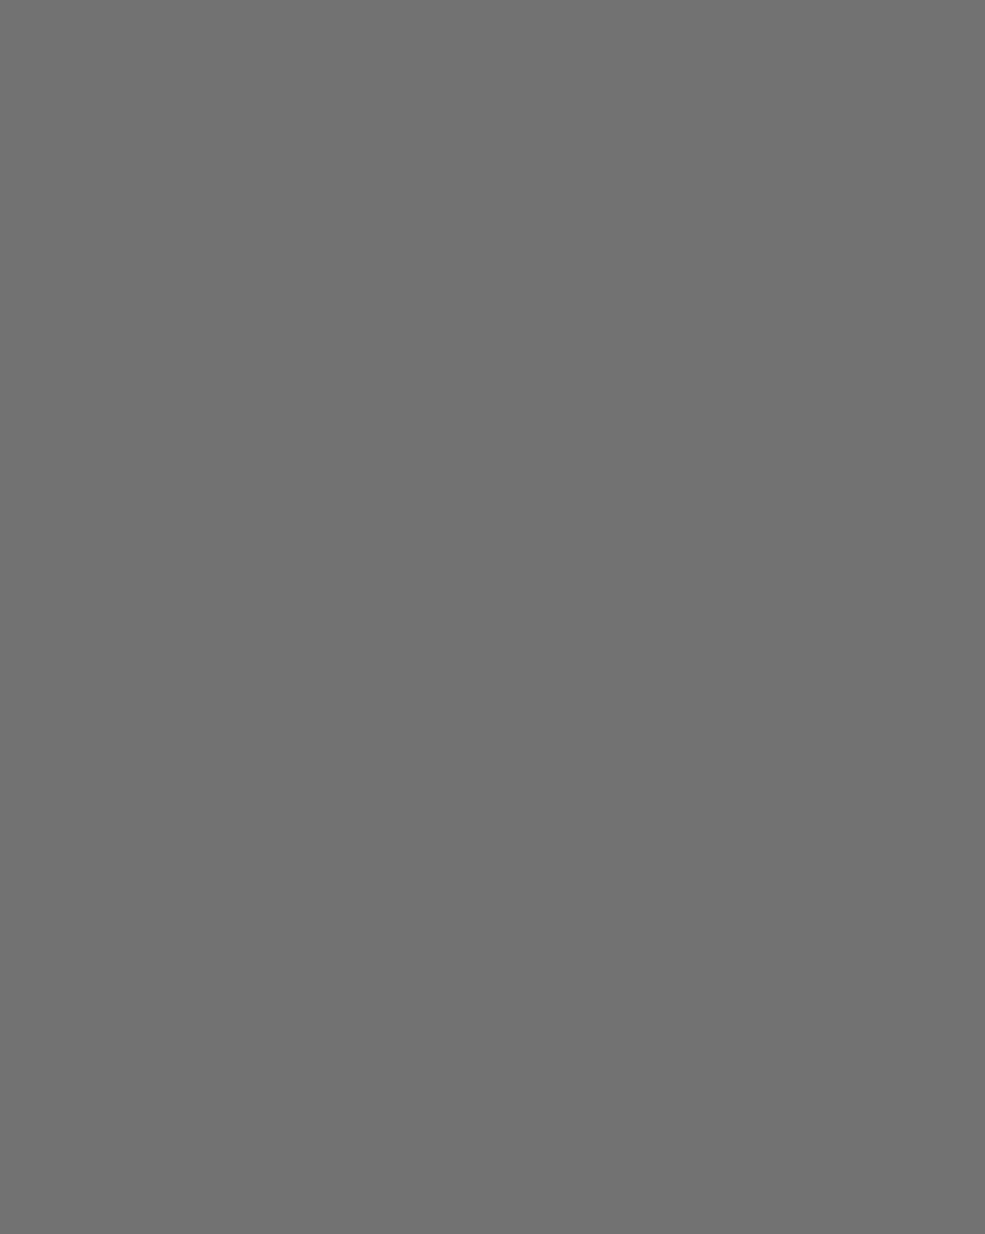 Афанасий Фет. 1880-е годы. Фотография: Объединенный мемориально-художественный музей-заповедник «Усадьба «Мураново» имени Ф.И. Тютчева и народных художественных промыслов «Усадьба Лукутиных», Пушкино, Московская область